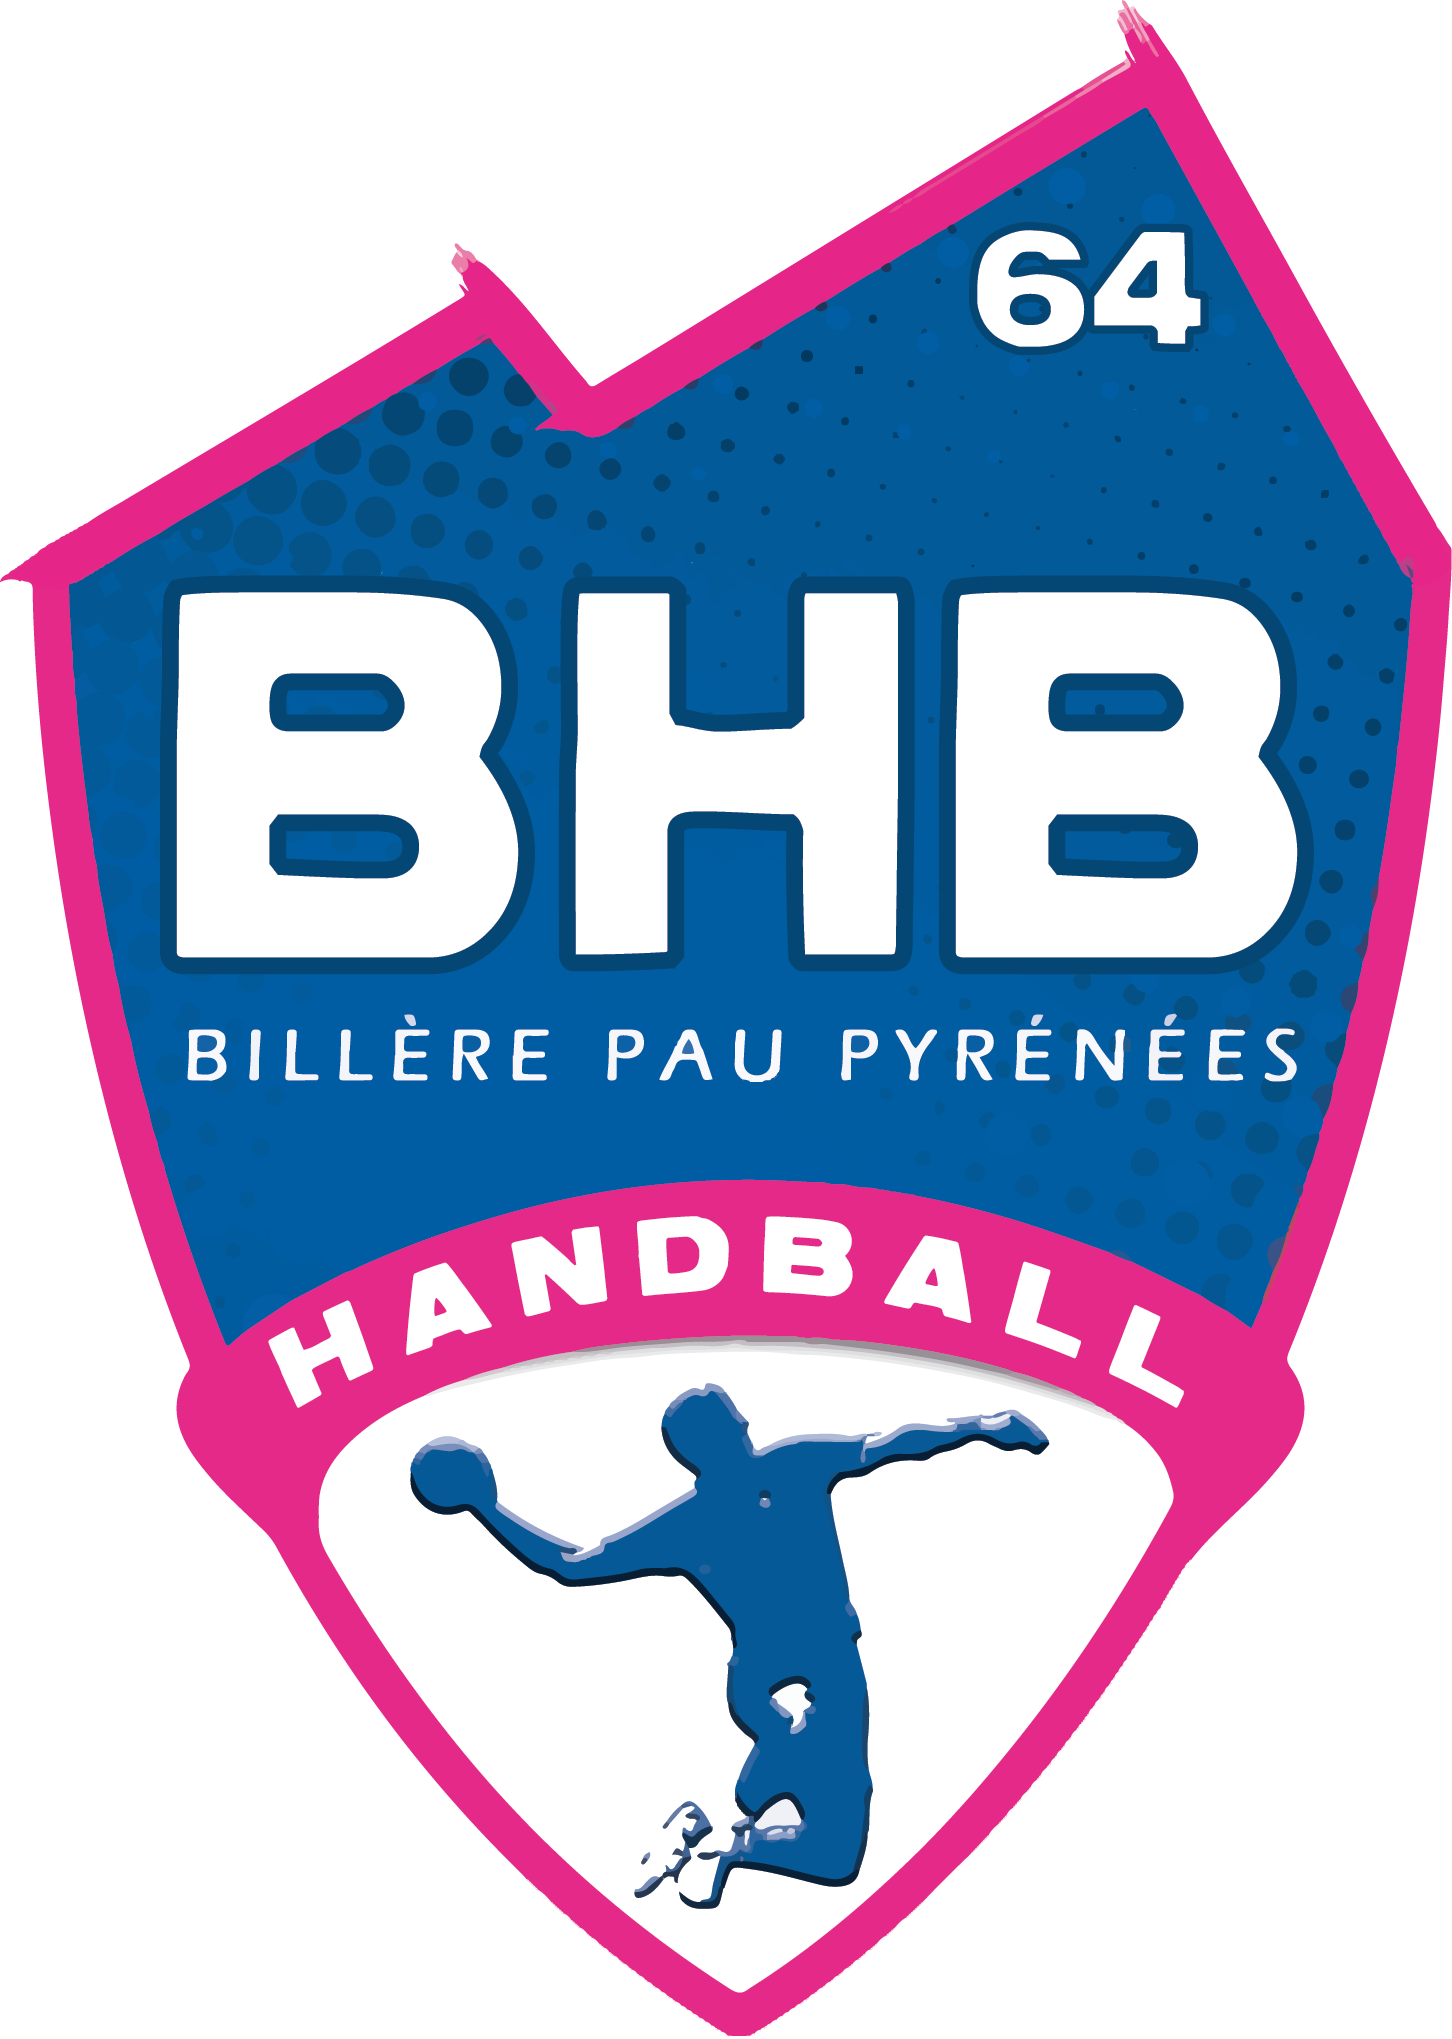 Logo BHB